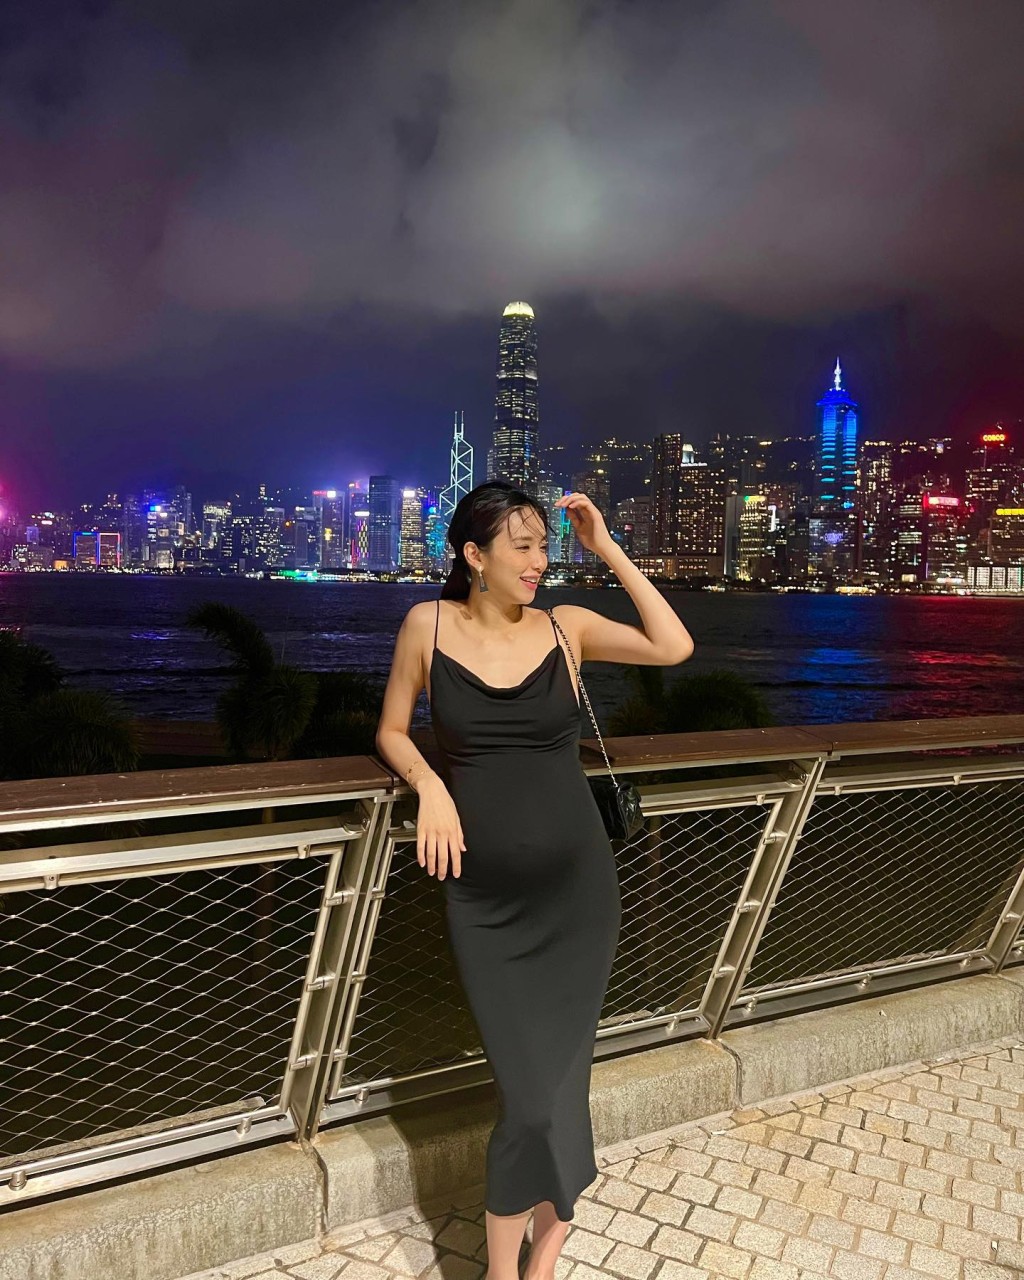 曾淑雅在IG晒出在维港夜景下拍摄的美照。